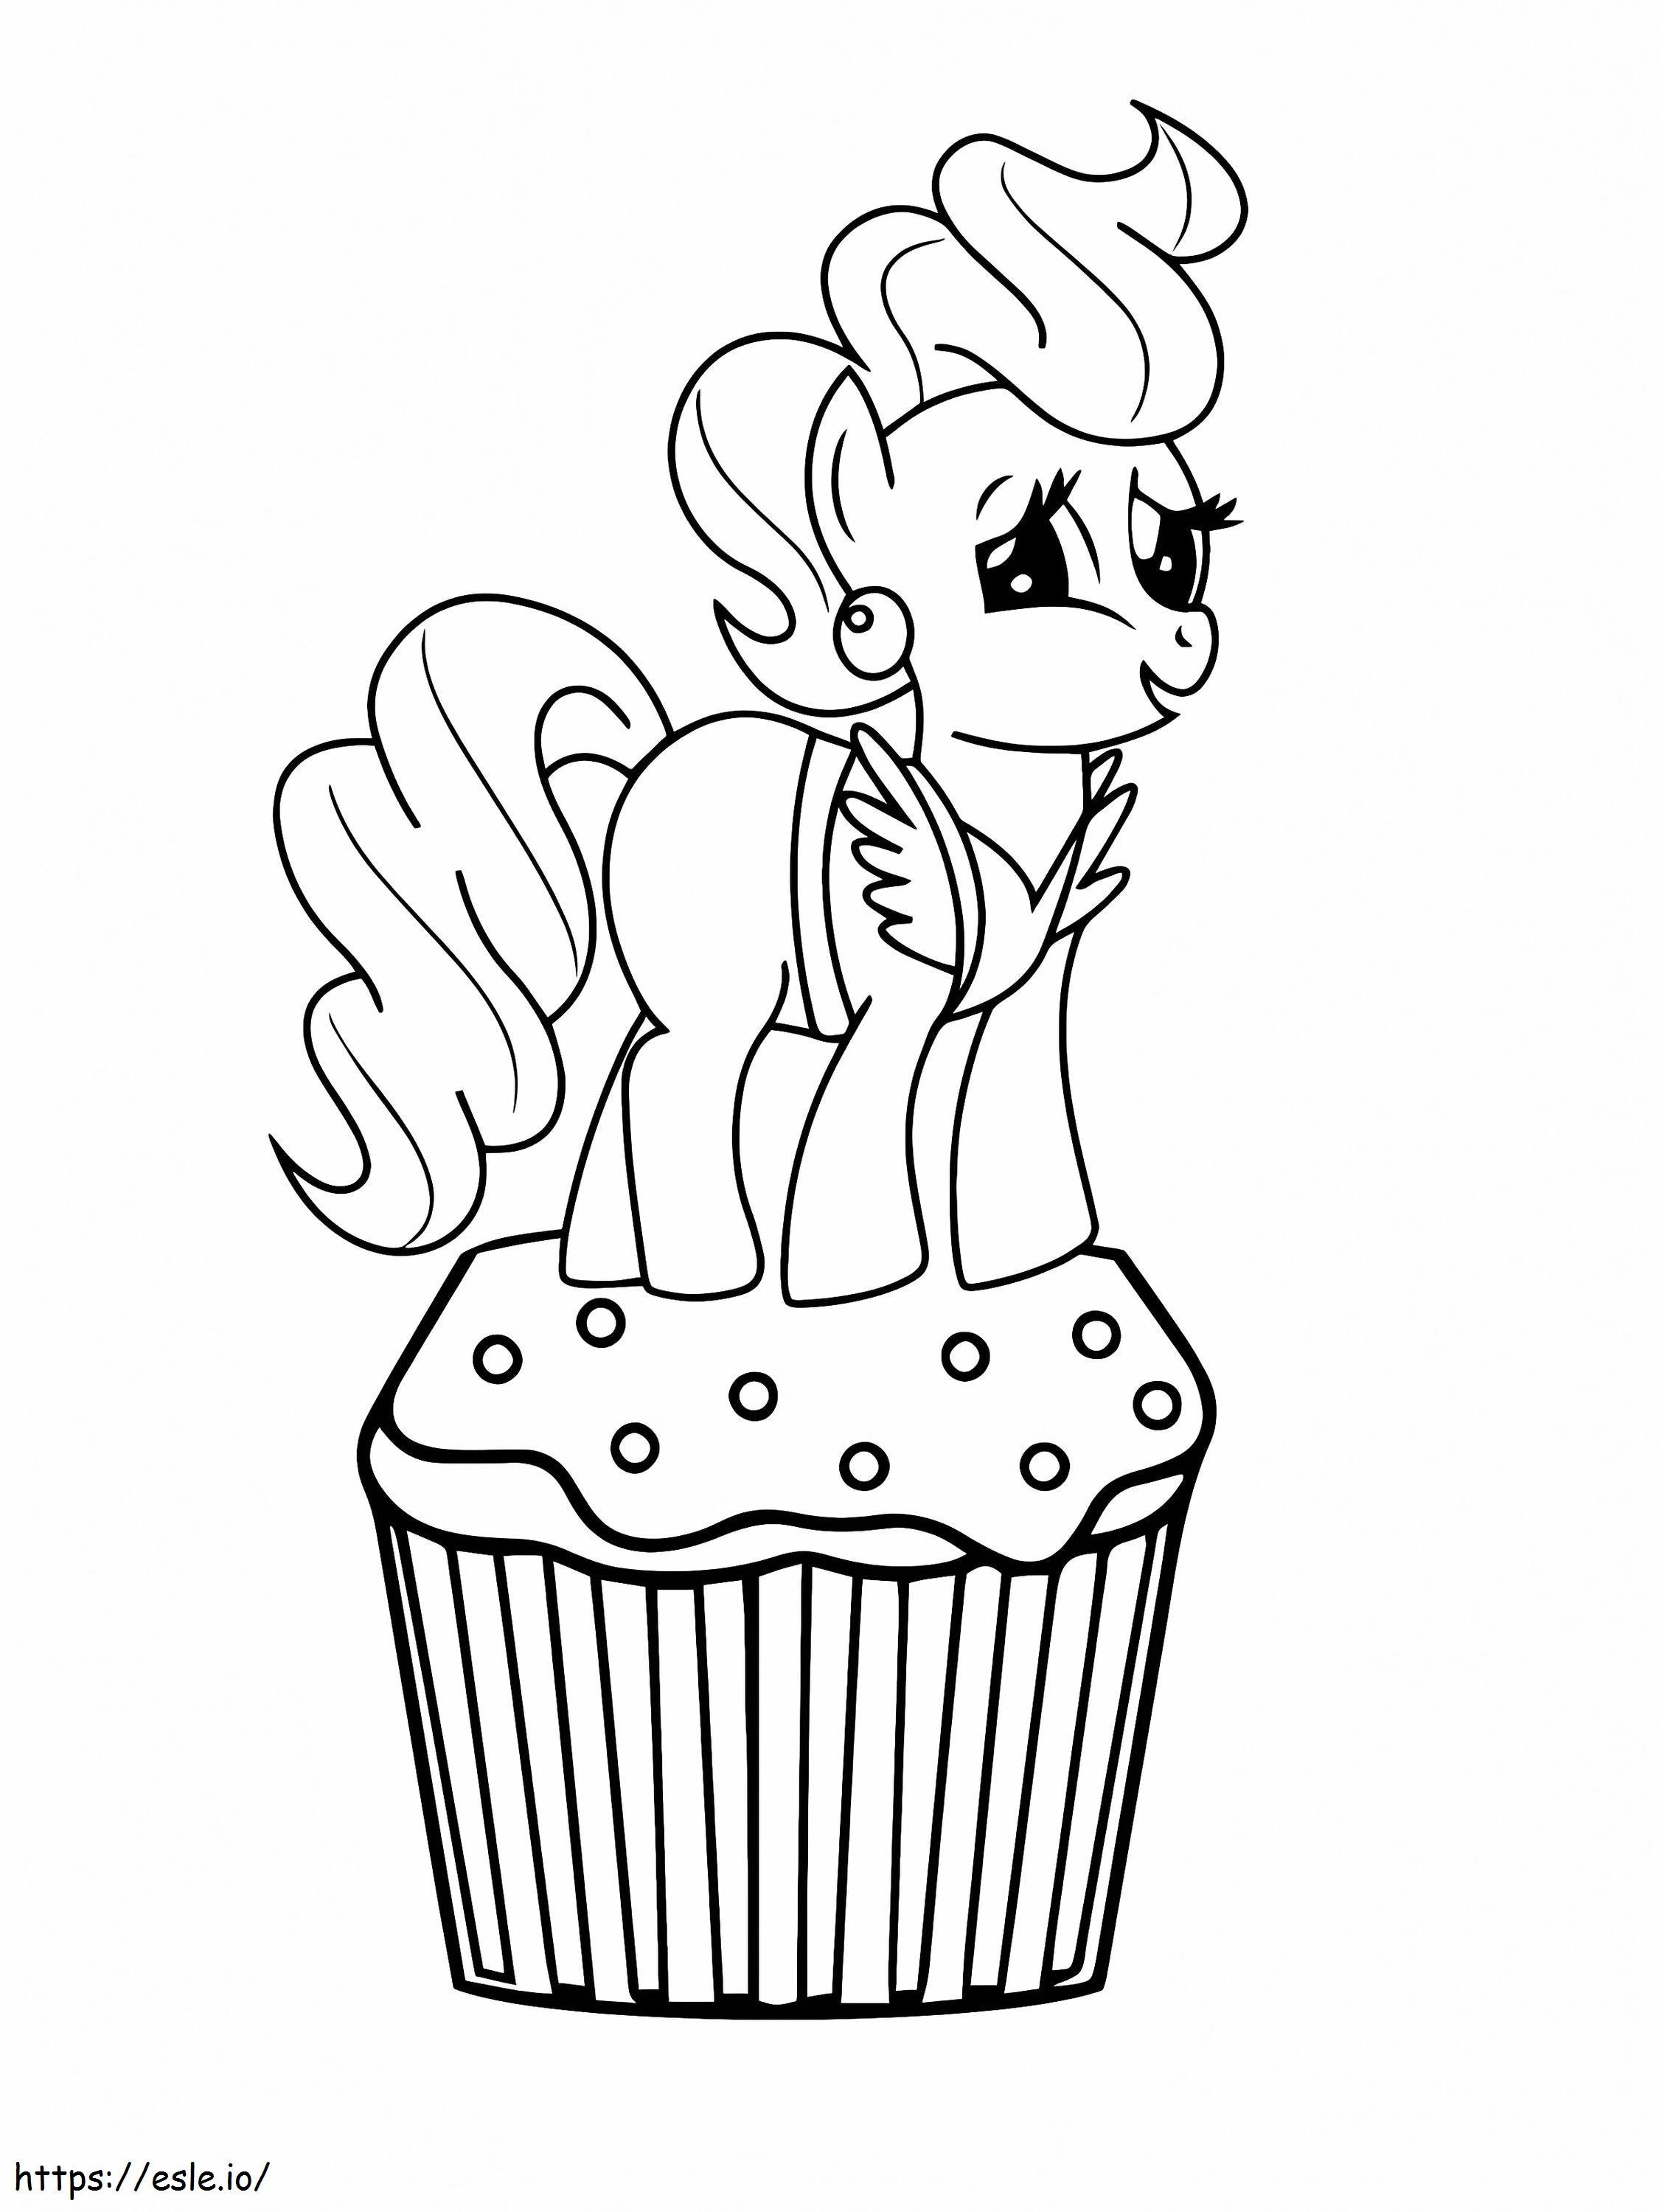 Bayan Kek My Little Pony'de Cupcake'in Üstünde boyama